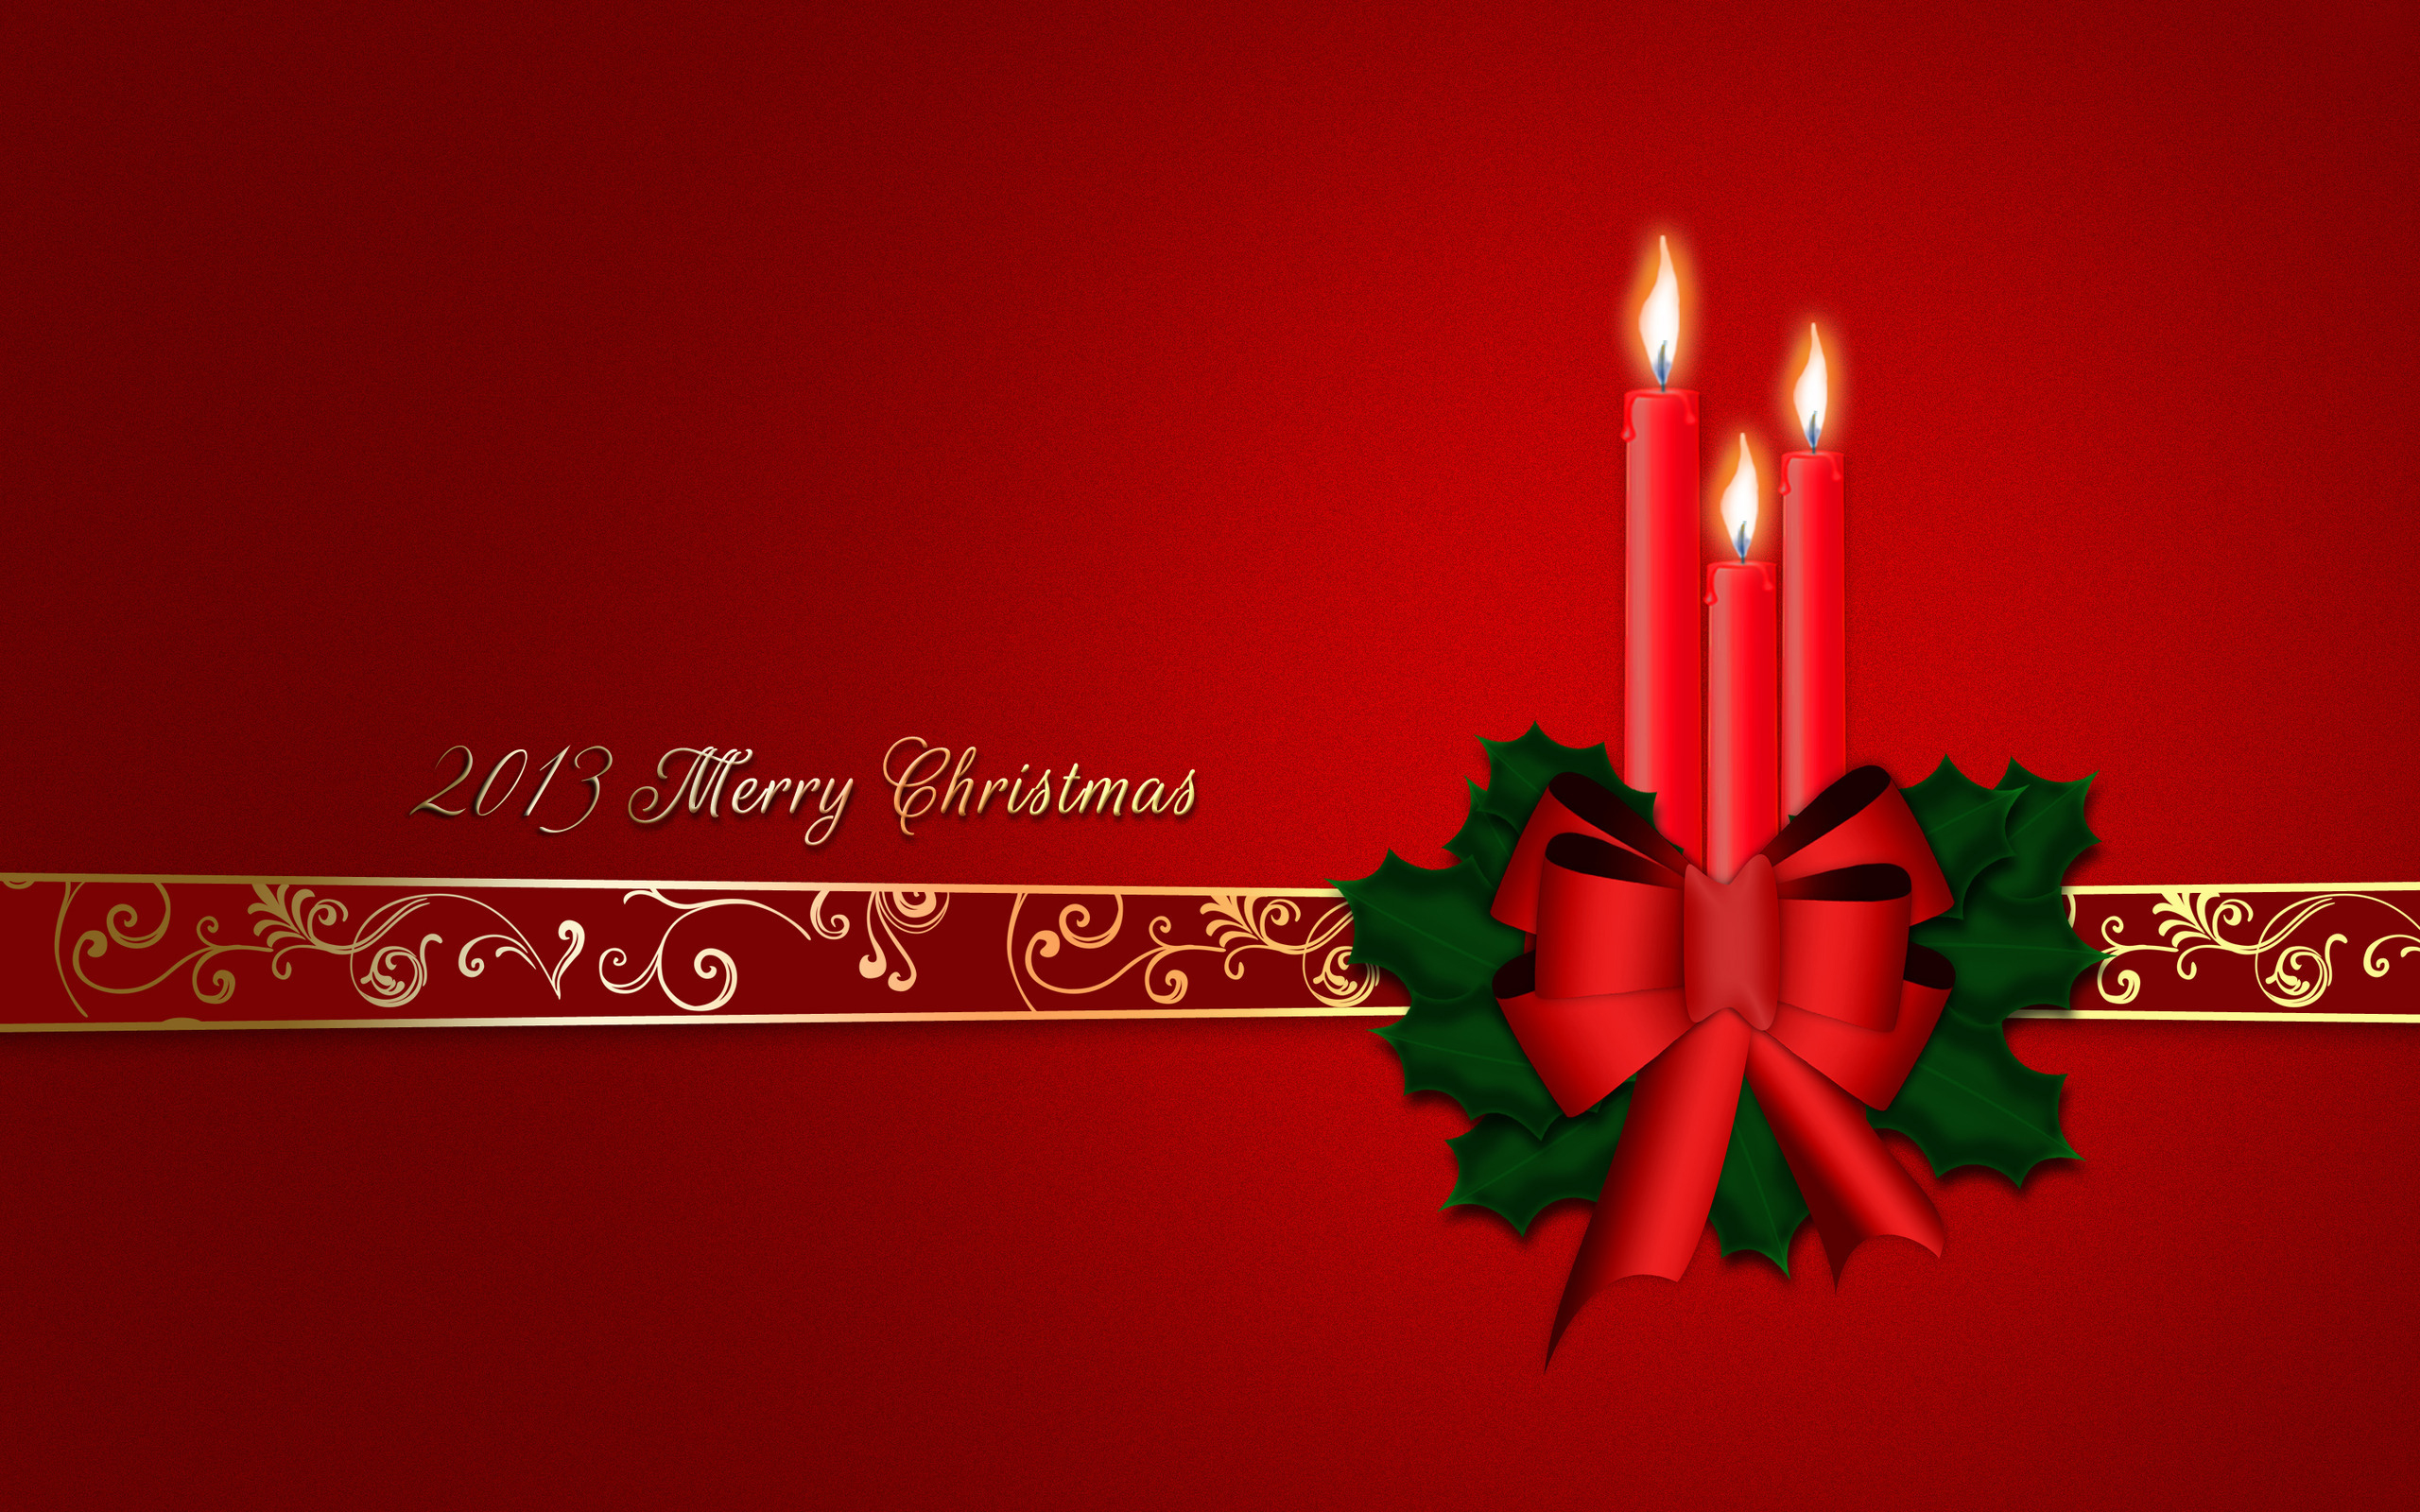 2013 Merry Christmas / Веселого Рождества на красном фоне с золотистой лентой и венком со свечами